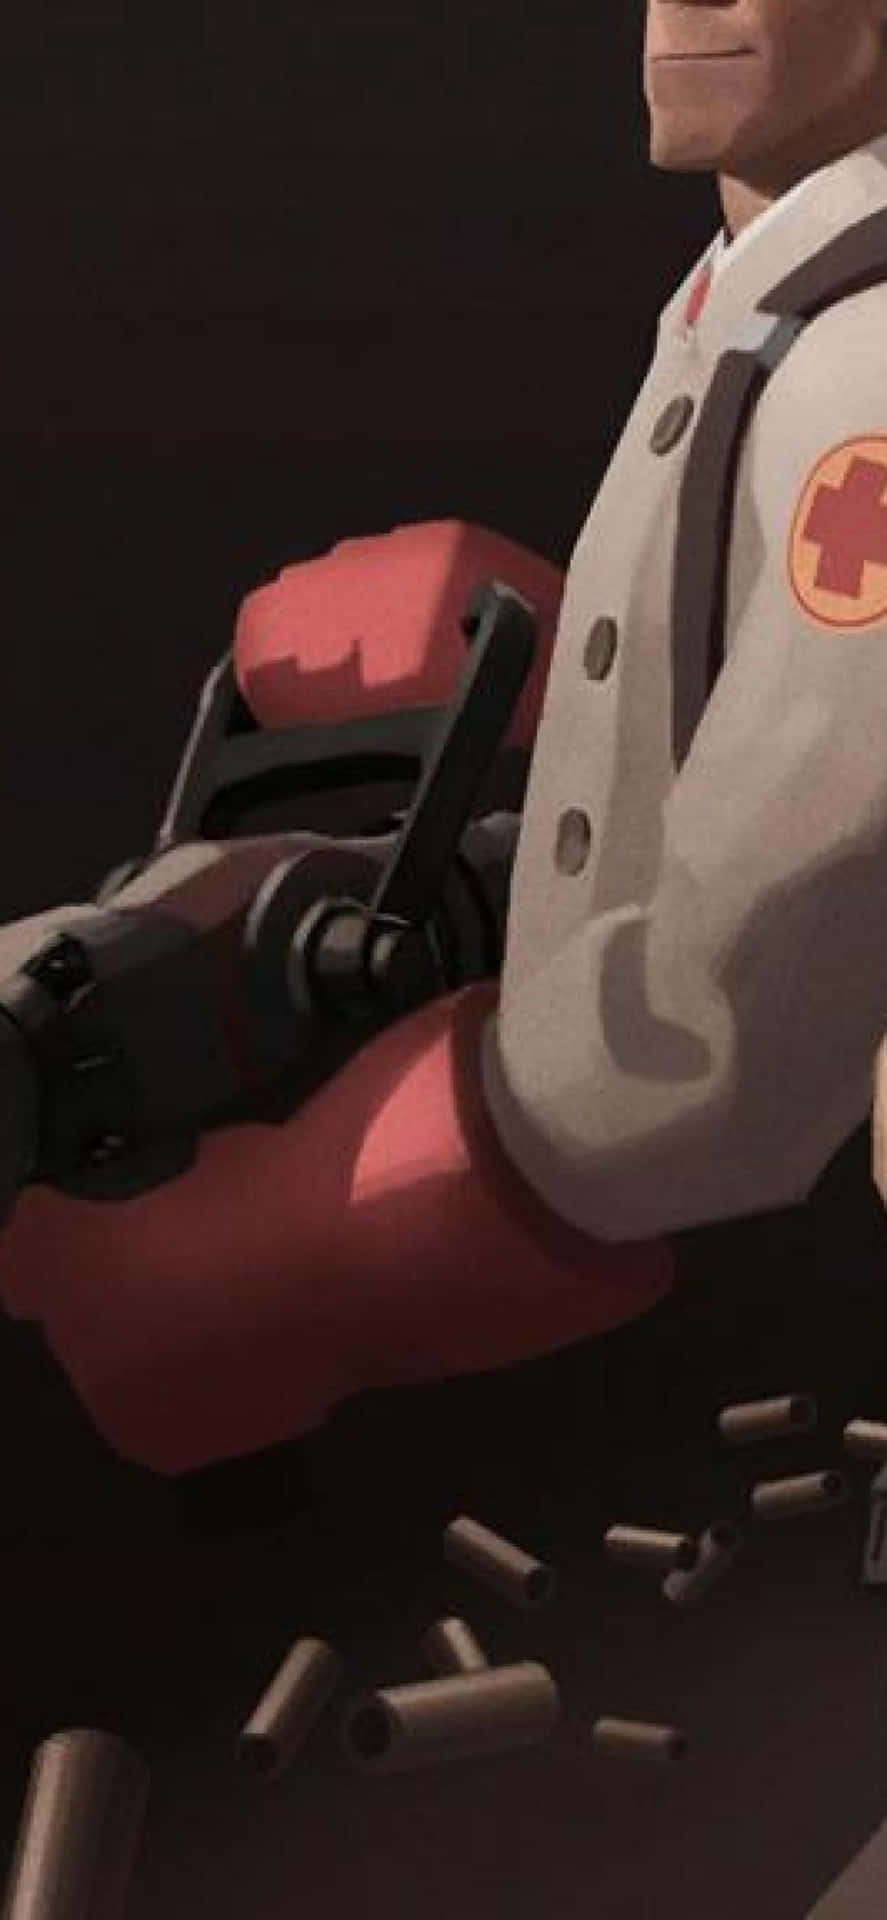 a cartoon character holding a gun